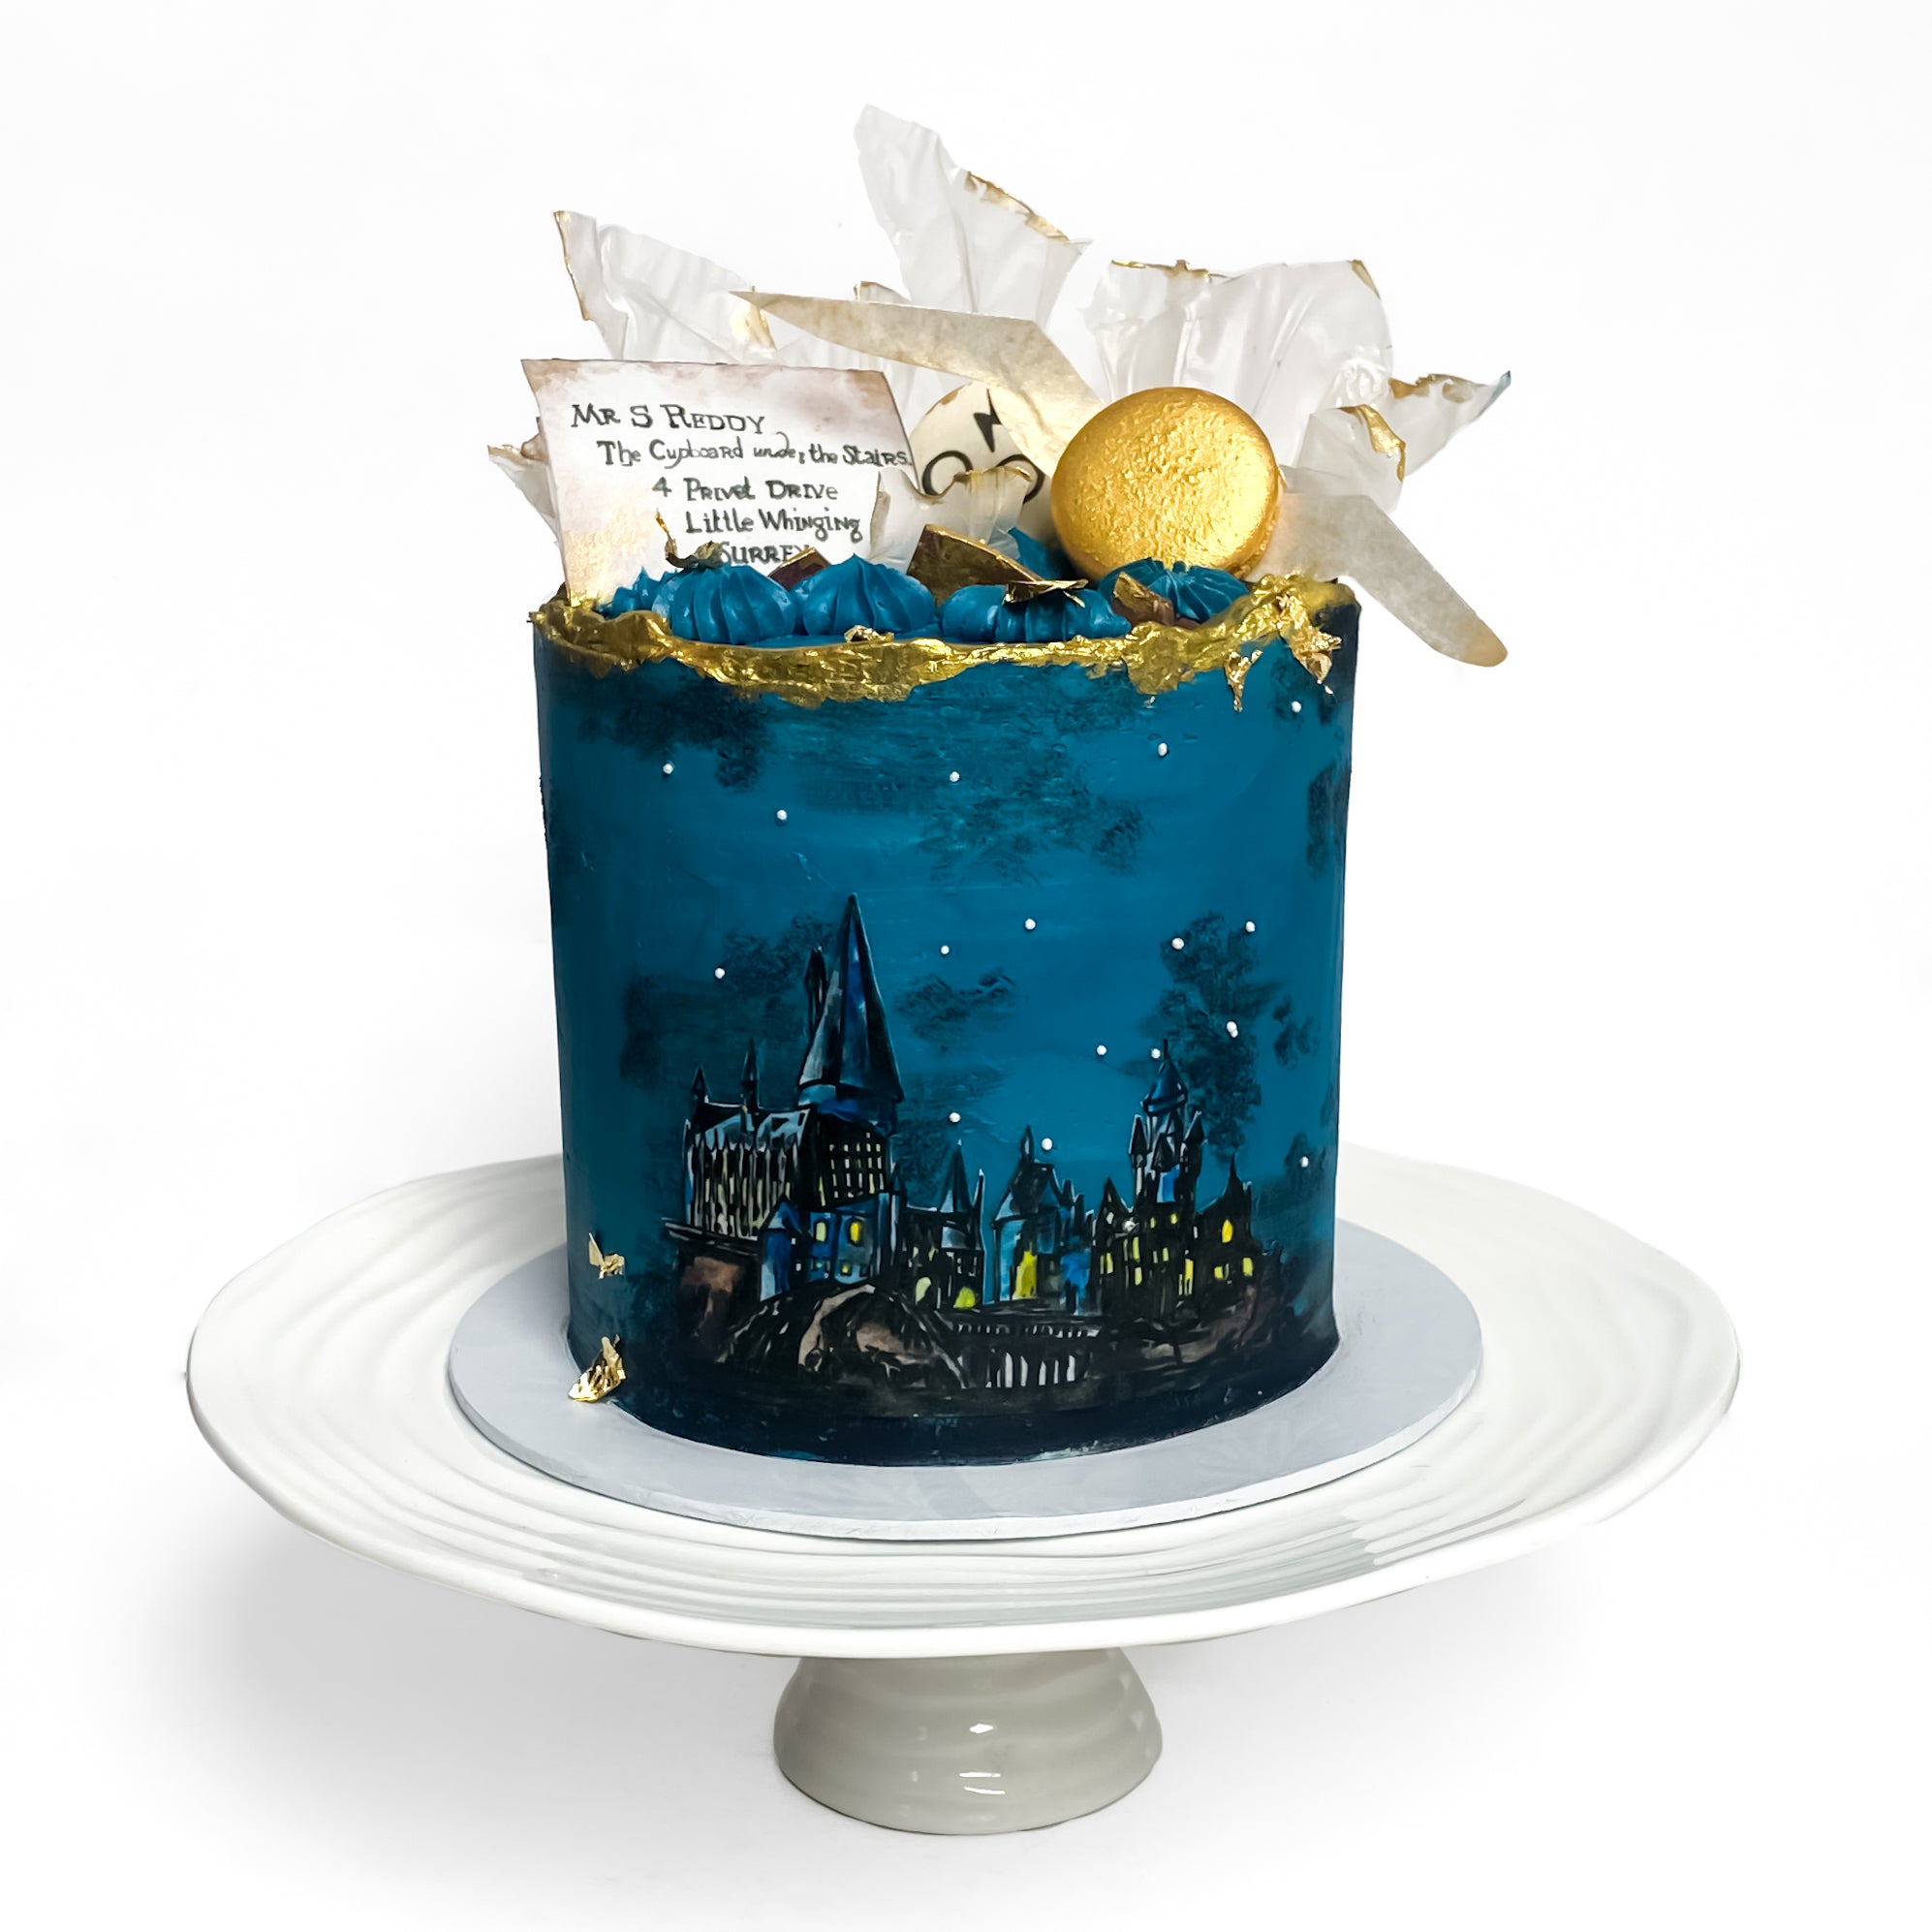 Harry Potter Happee Birthdae Cake - The Cakeroom Bakery Shop